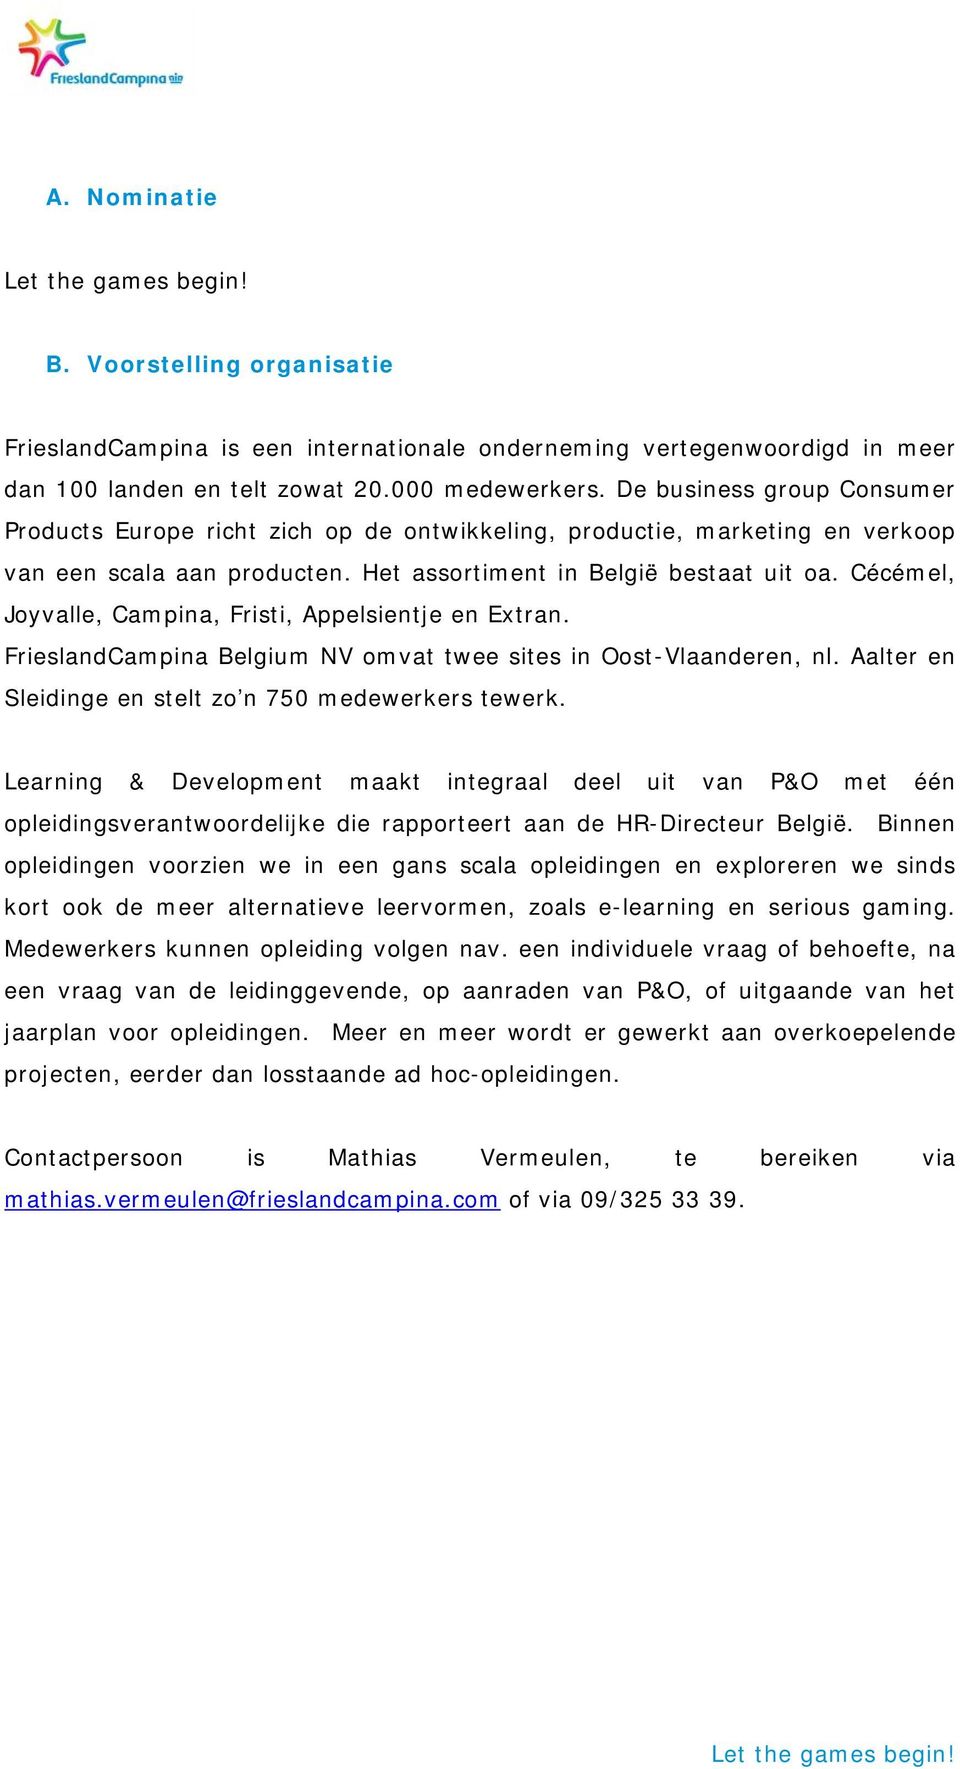 Cécémel, Joyvalle, Campina, Fristi, Appelsientje en Extran. FrieslandCampina Belgium NV omvat twee sites in Oost-Vlaanderen, nl. Aalter en Sleidinge en stelt zo n 750 medewerkers tewerk.